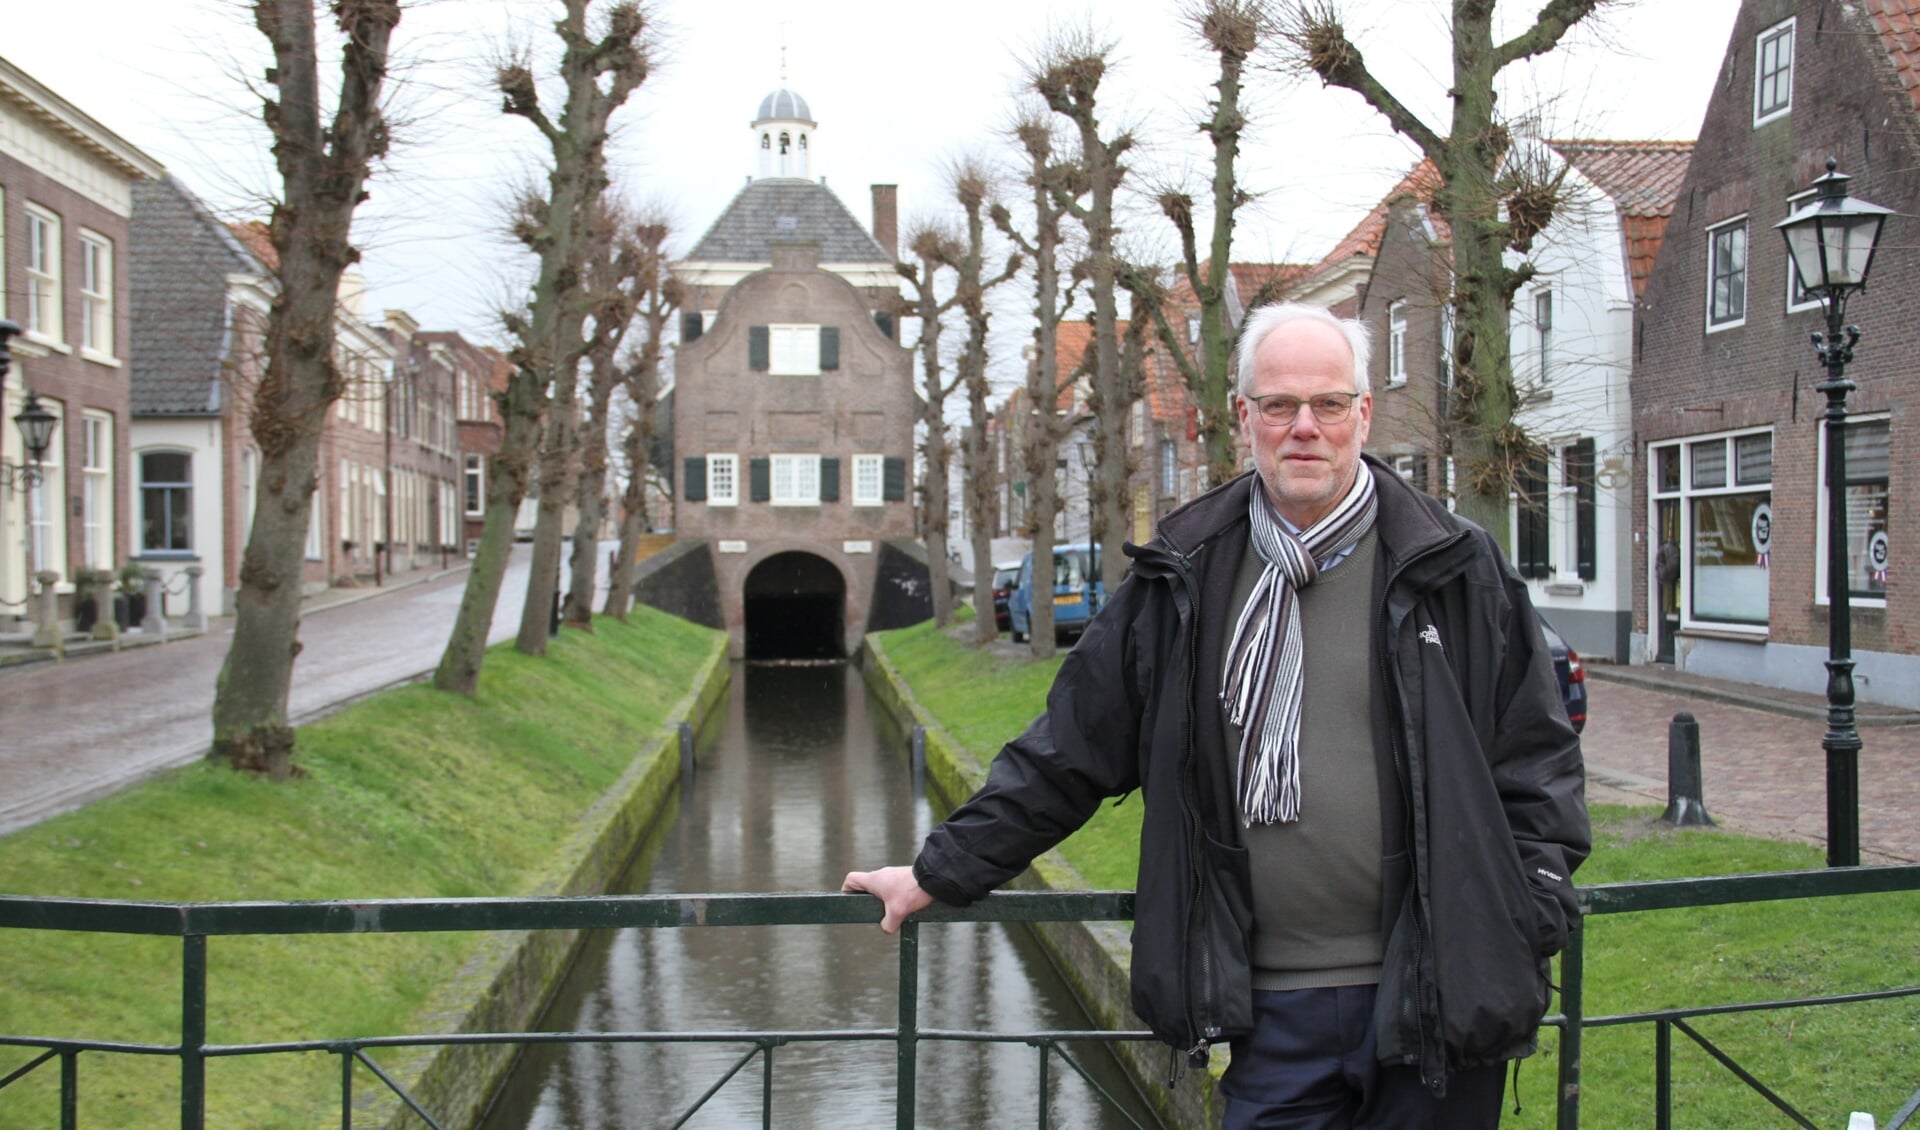 • Jan Lock wil een bijdrage leveren aan de democratie in Nederland.